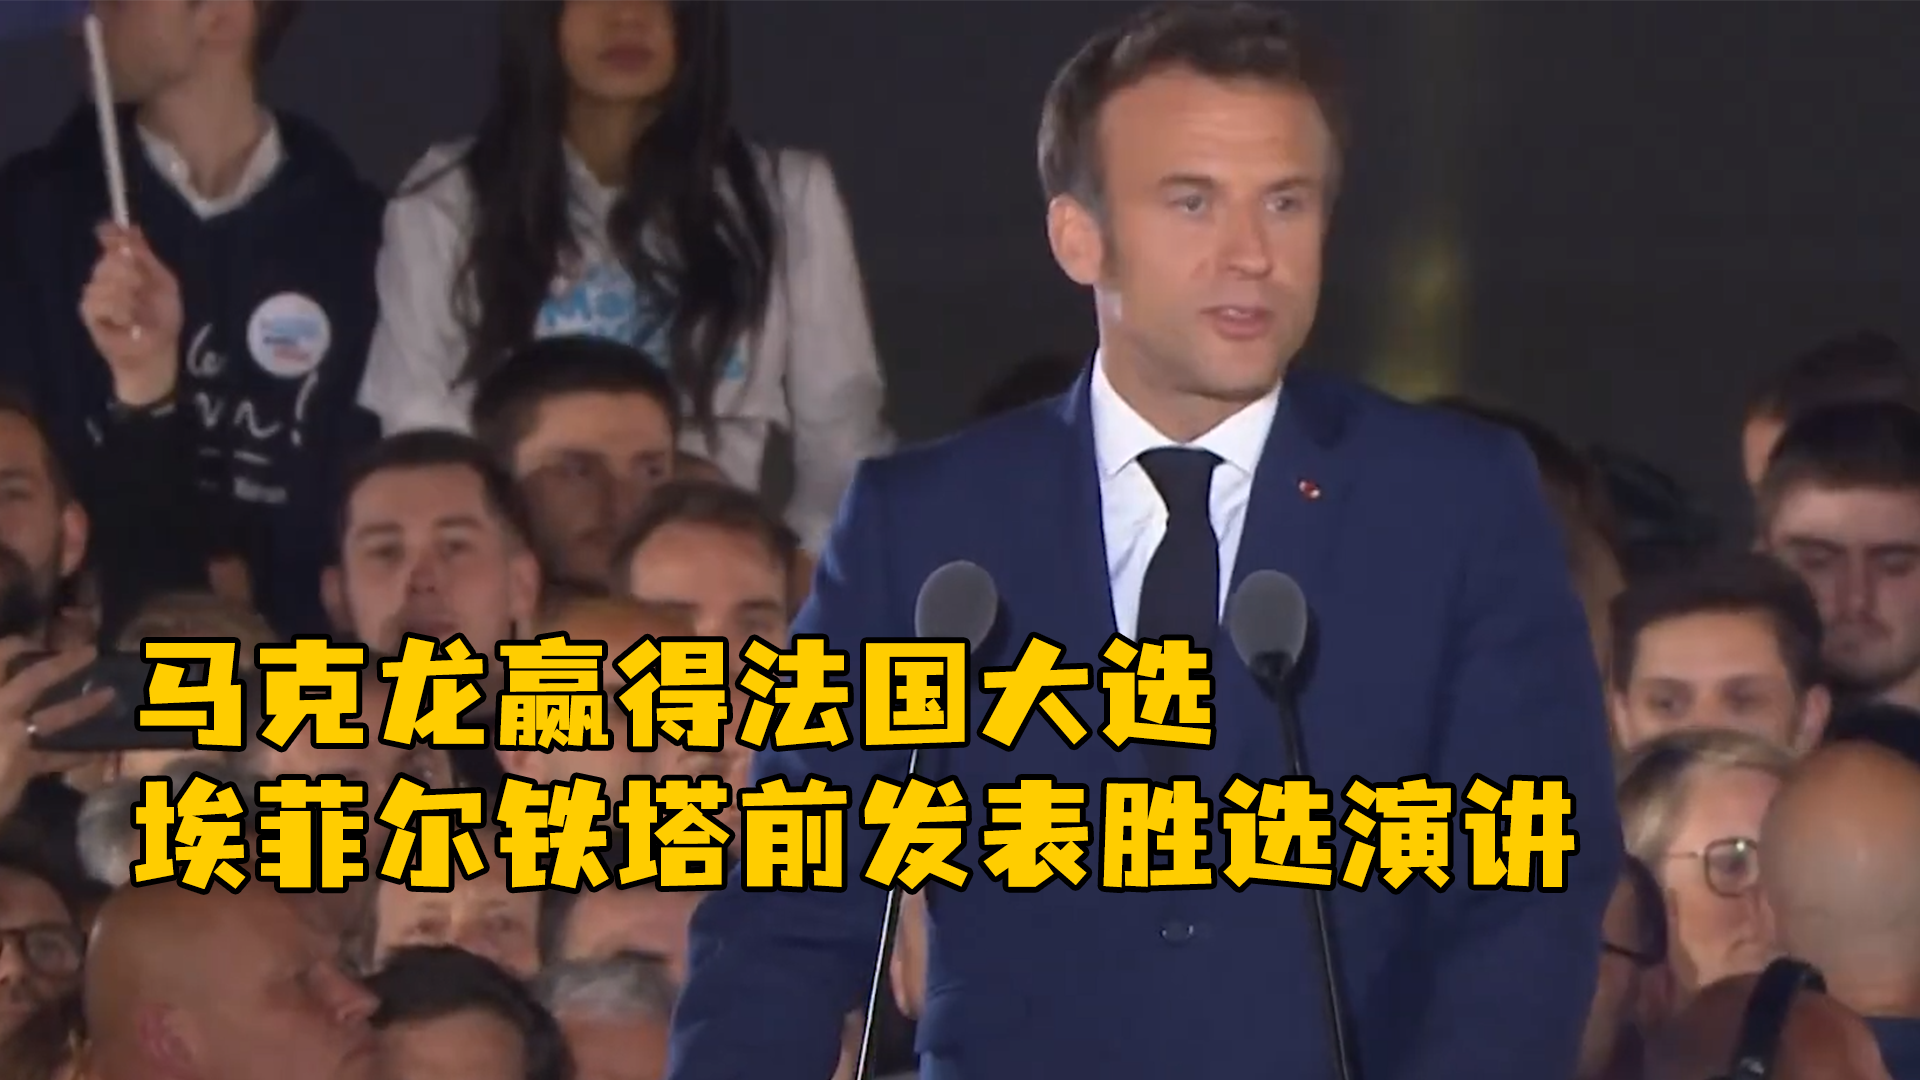 马克龙发表胜选演讲，称自己是所有法国人的总统